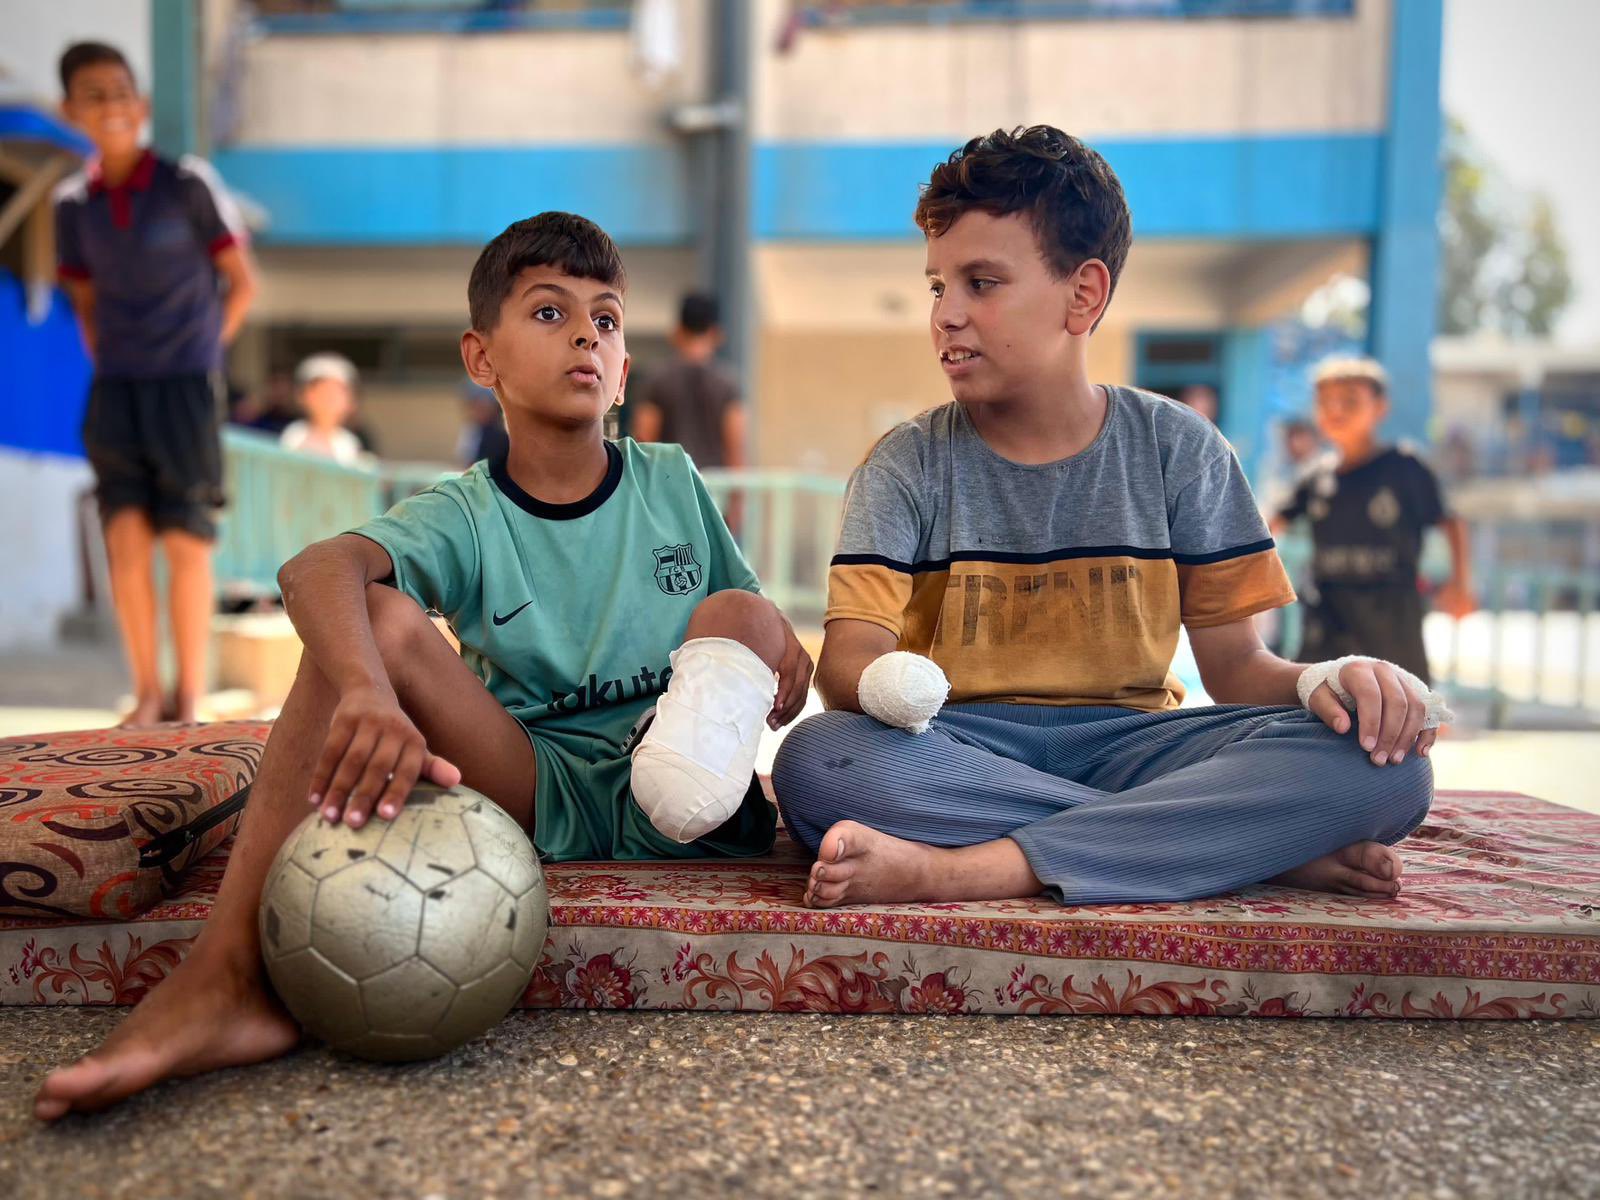 لازاريني: أطفال غزة يعيشون صدمات لا توصف بعد 300 يوم من الحرب